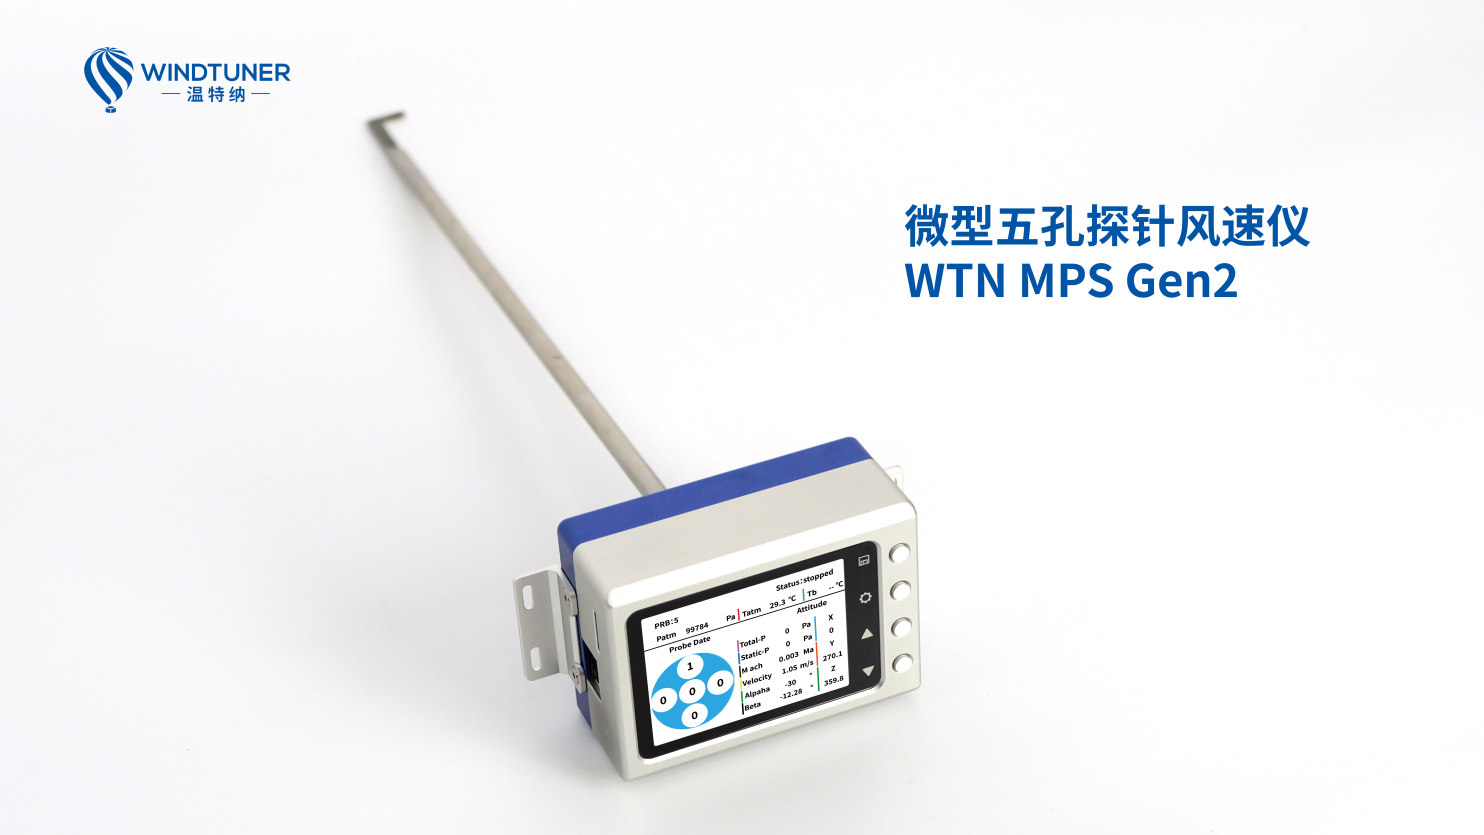 温特纳五孔探针风速仪在风速测量领域的革新应用